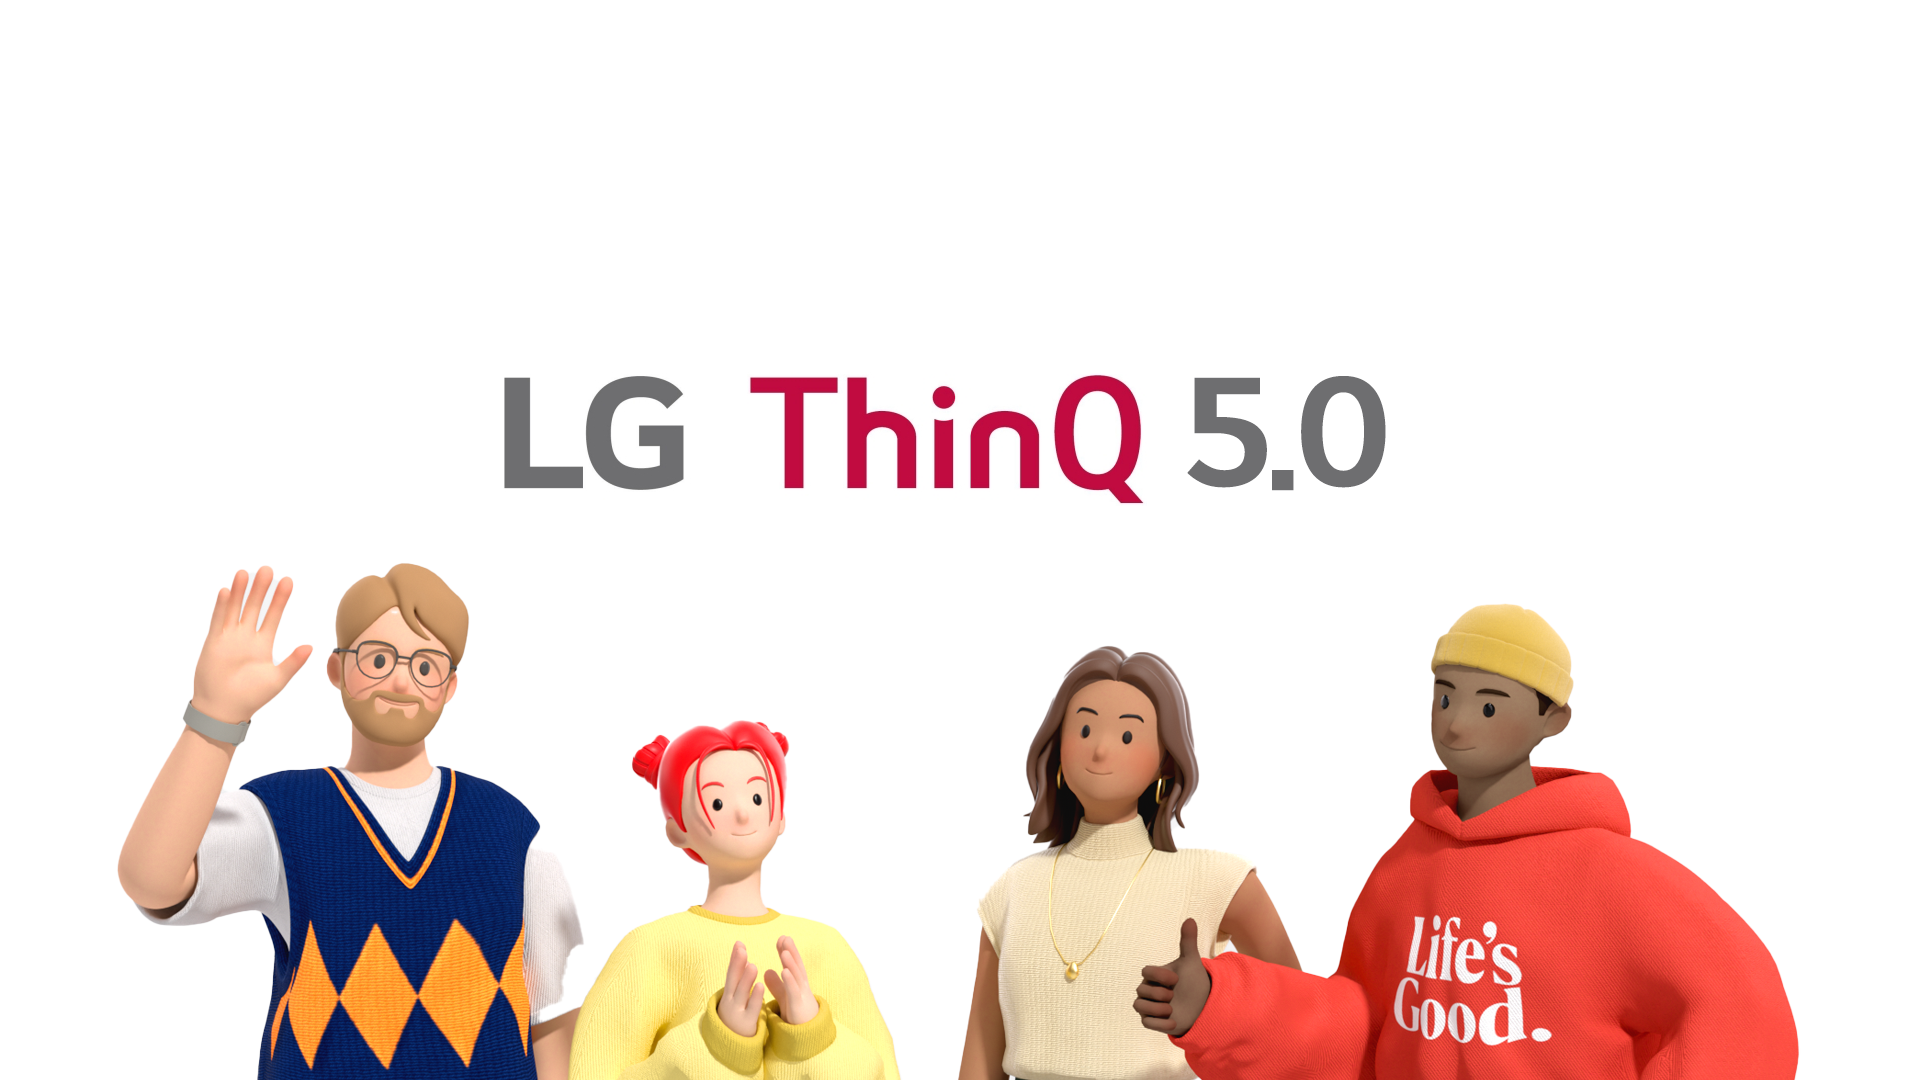 LG ThinQ 5.0